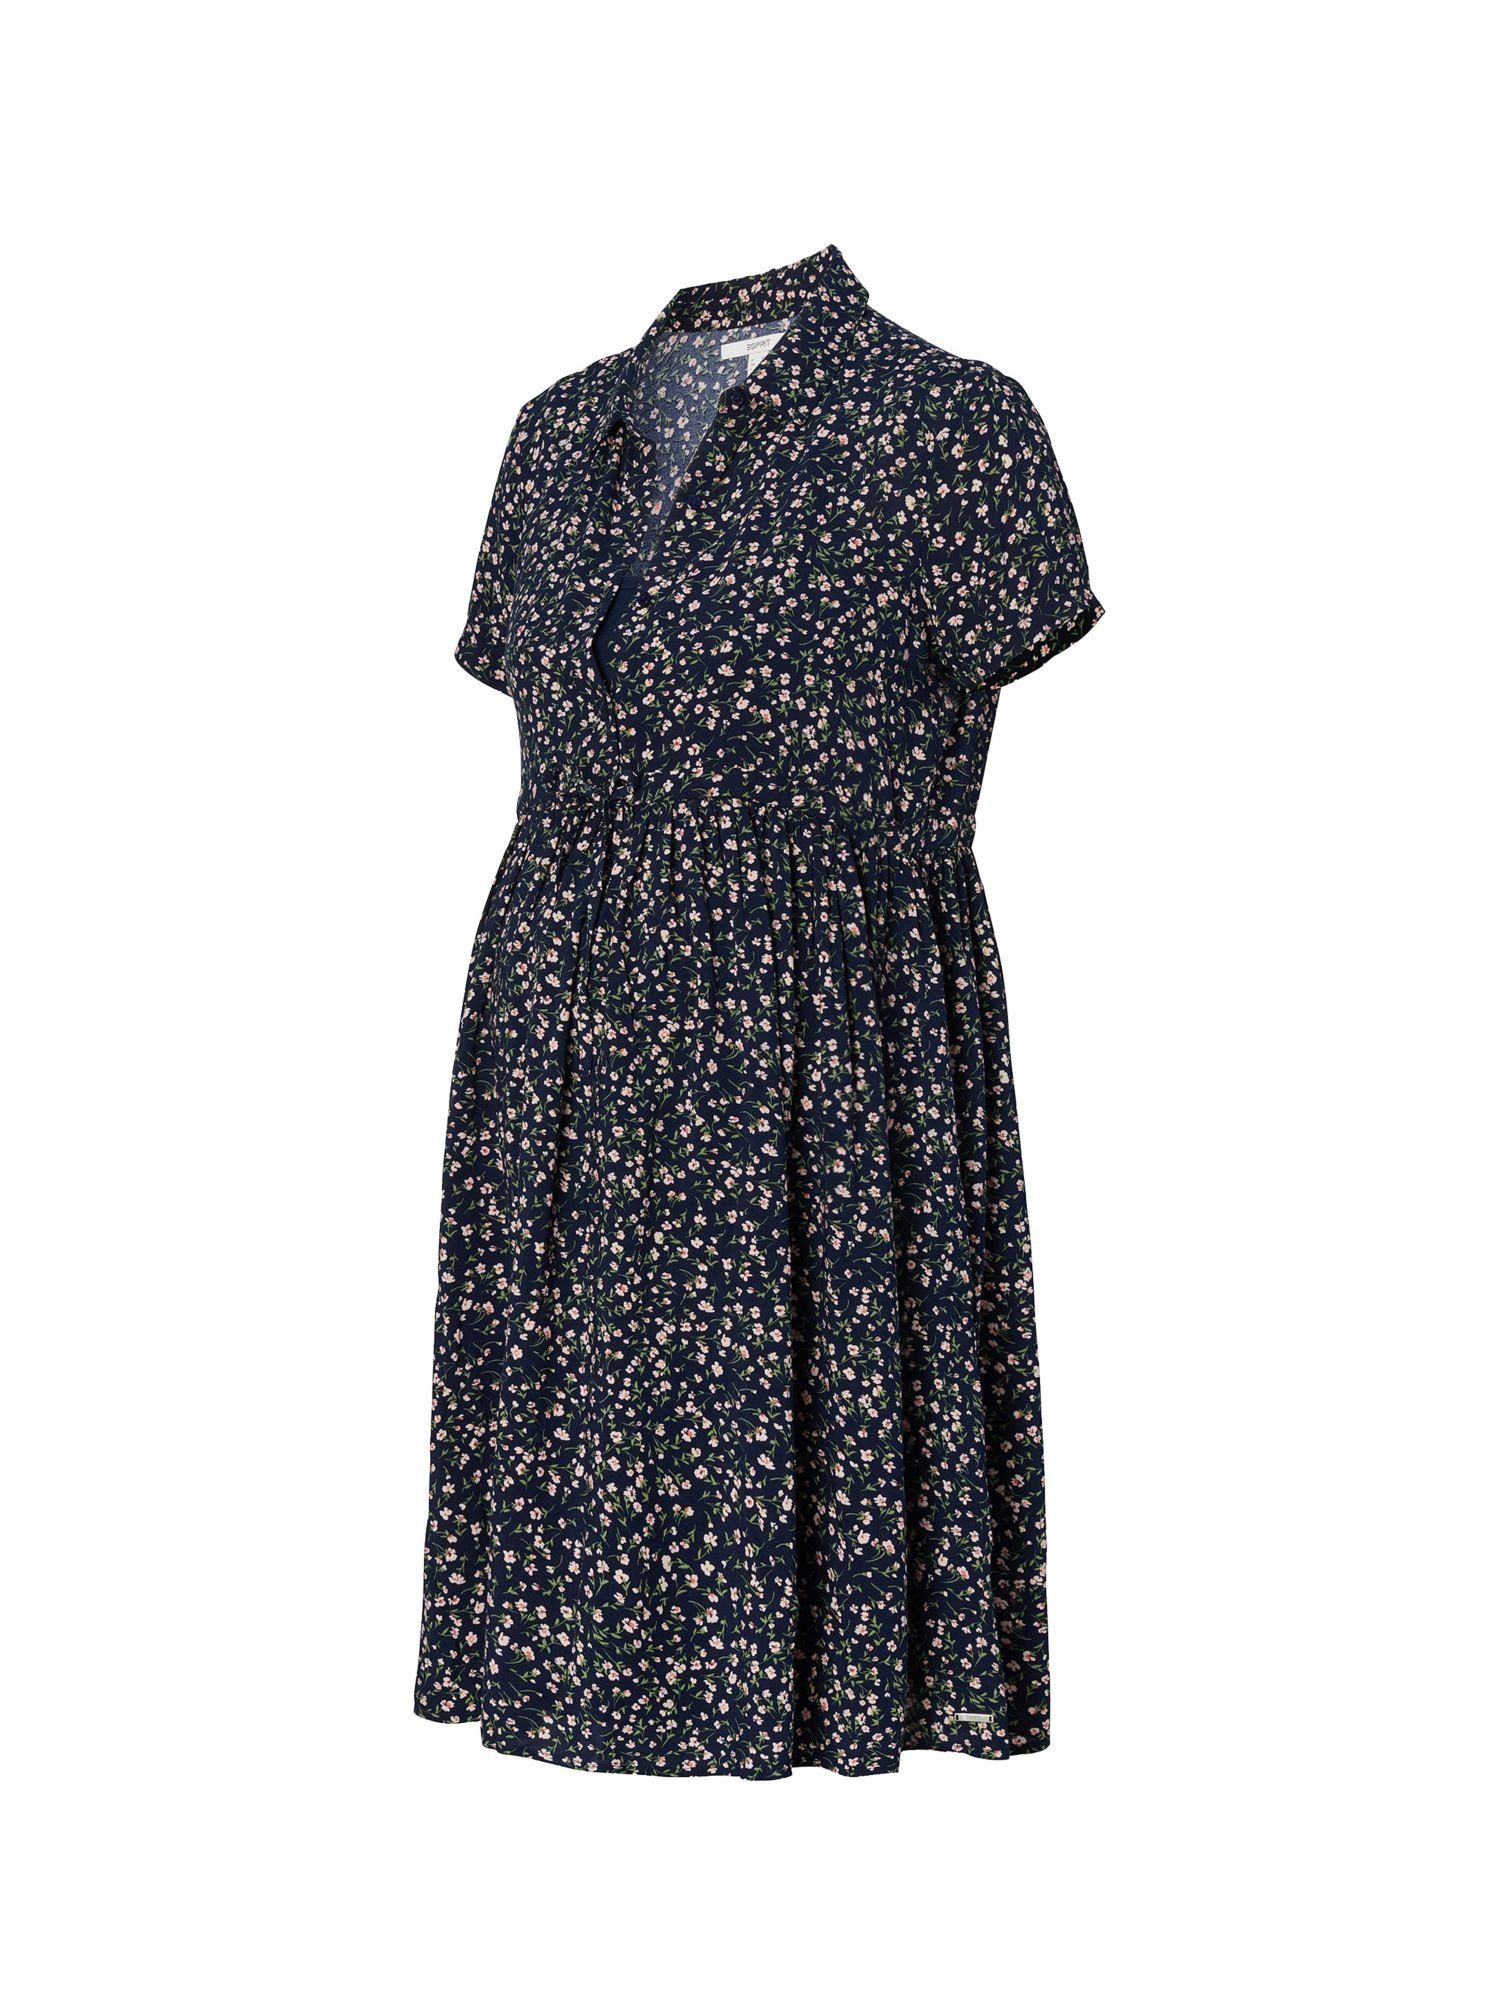 ESPRIT maternity Umstandskleid »Kleid mit Millefleurs-Print« online kaufen  | OTTO